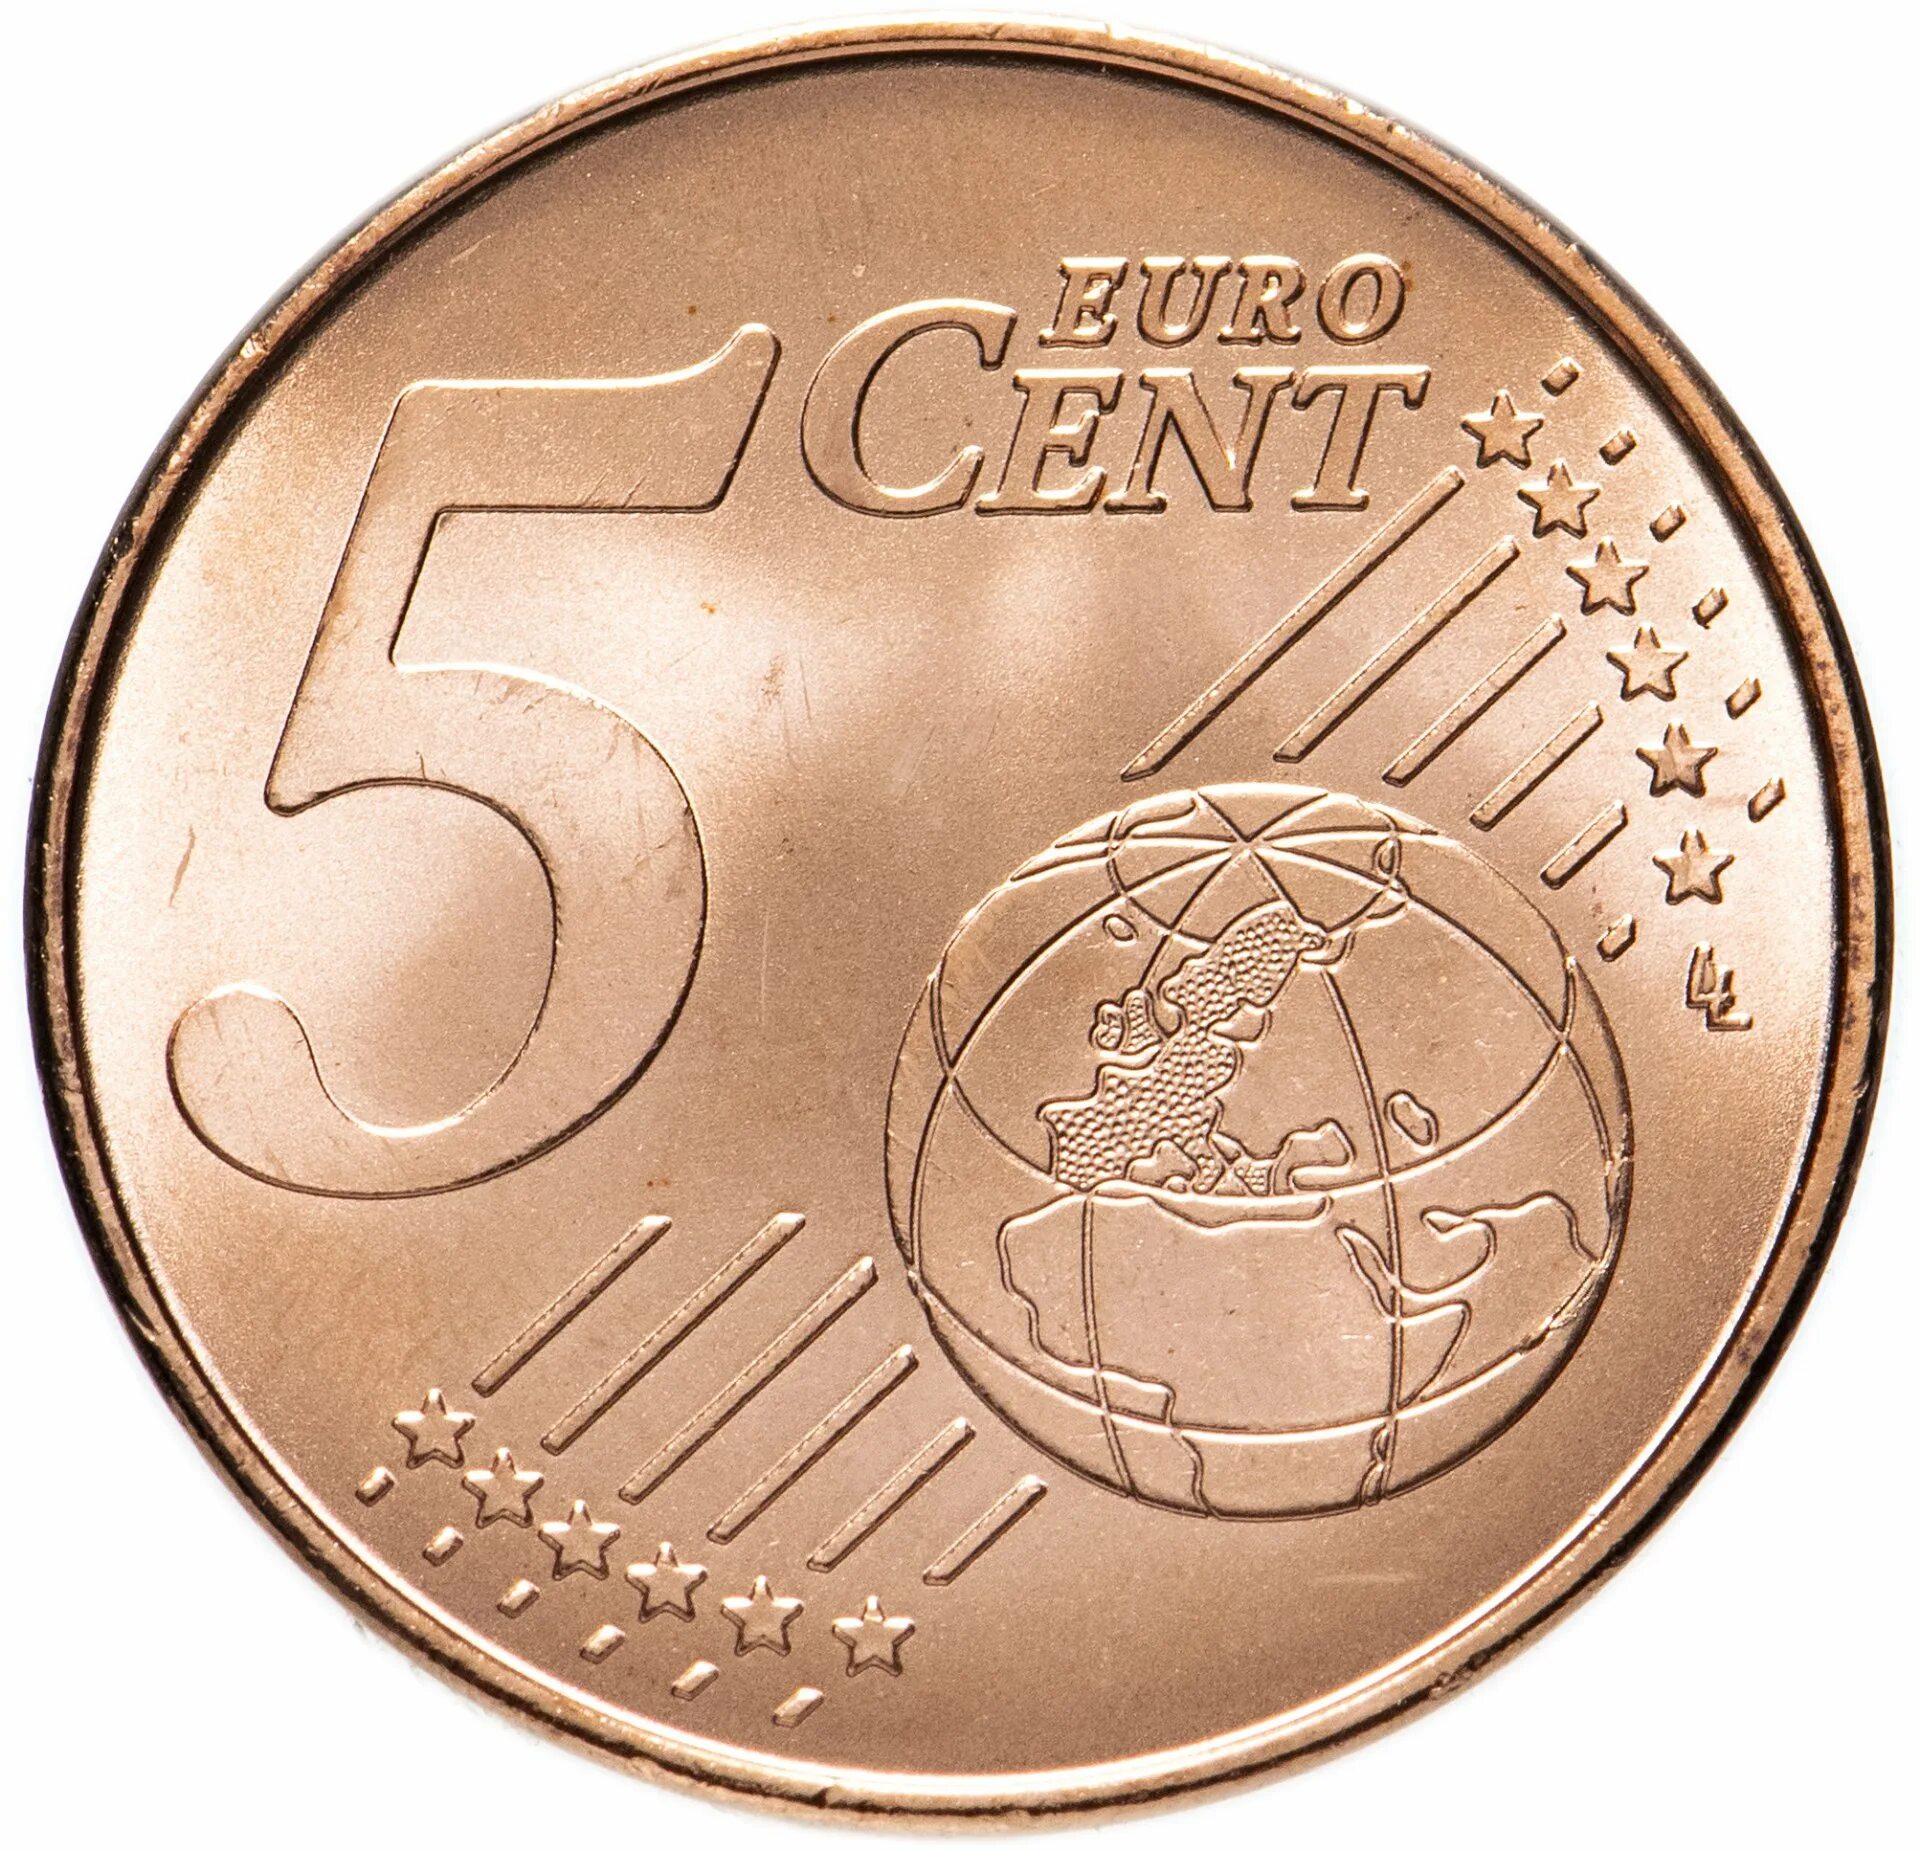 Пятерка монет. Монеты евро 5 Euro Cent. 5 Евроцентов 1999. 1 Euro Cent монета. 5 Евро центов Испания 1999.